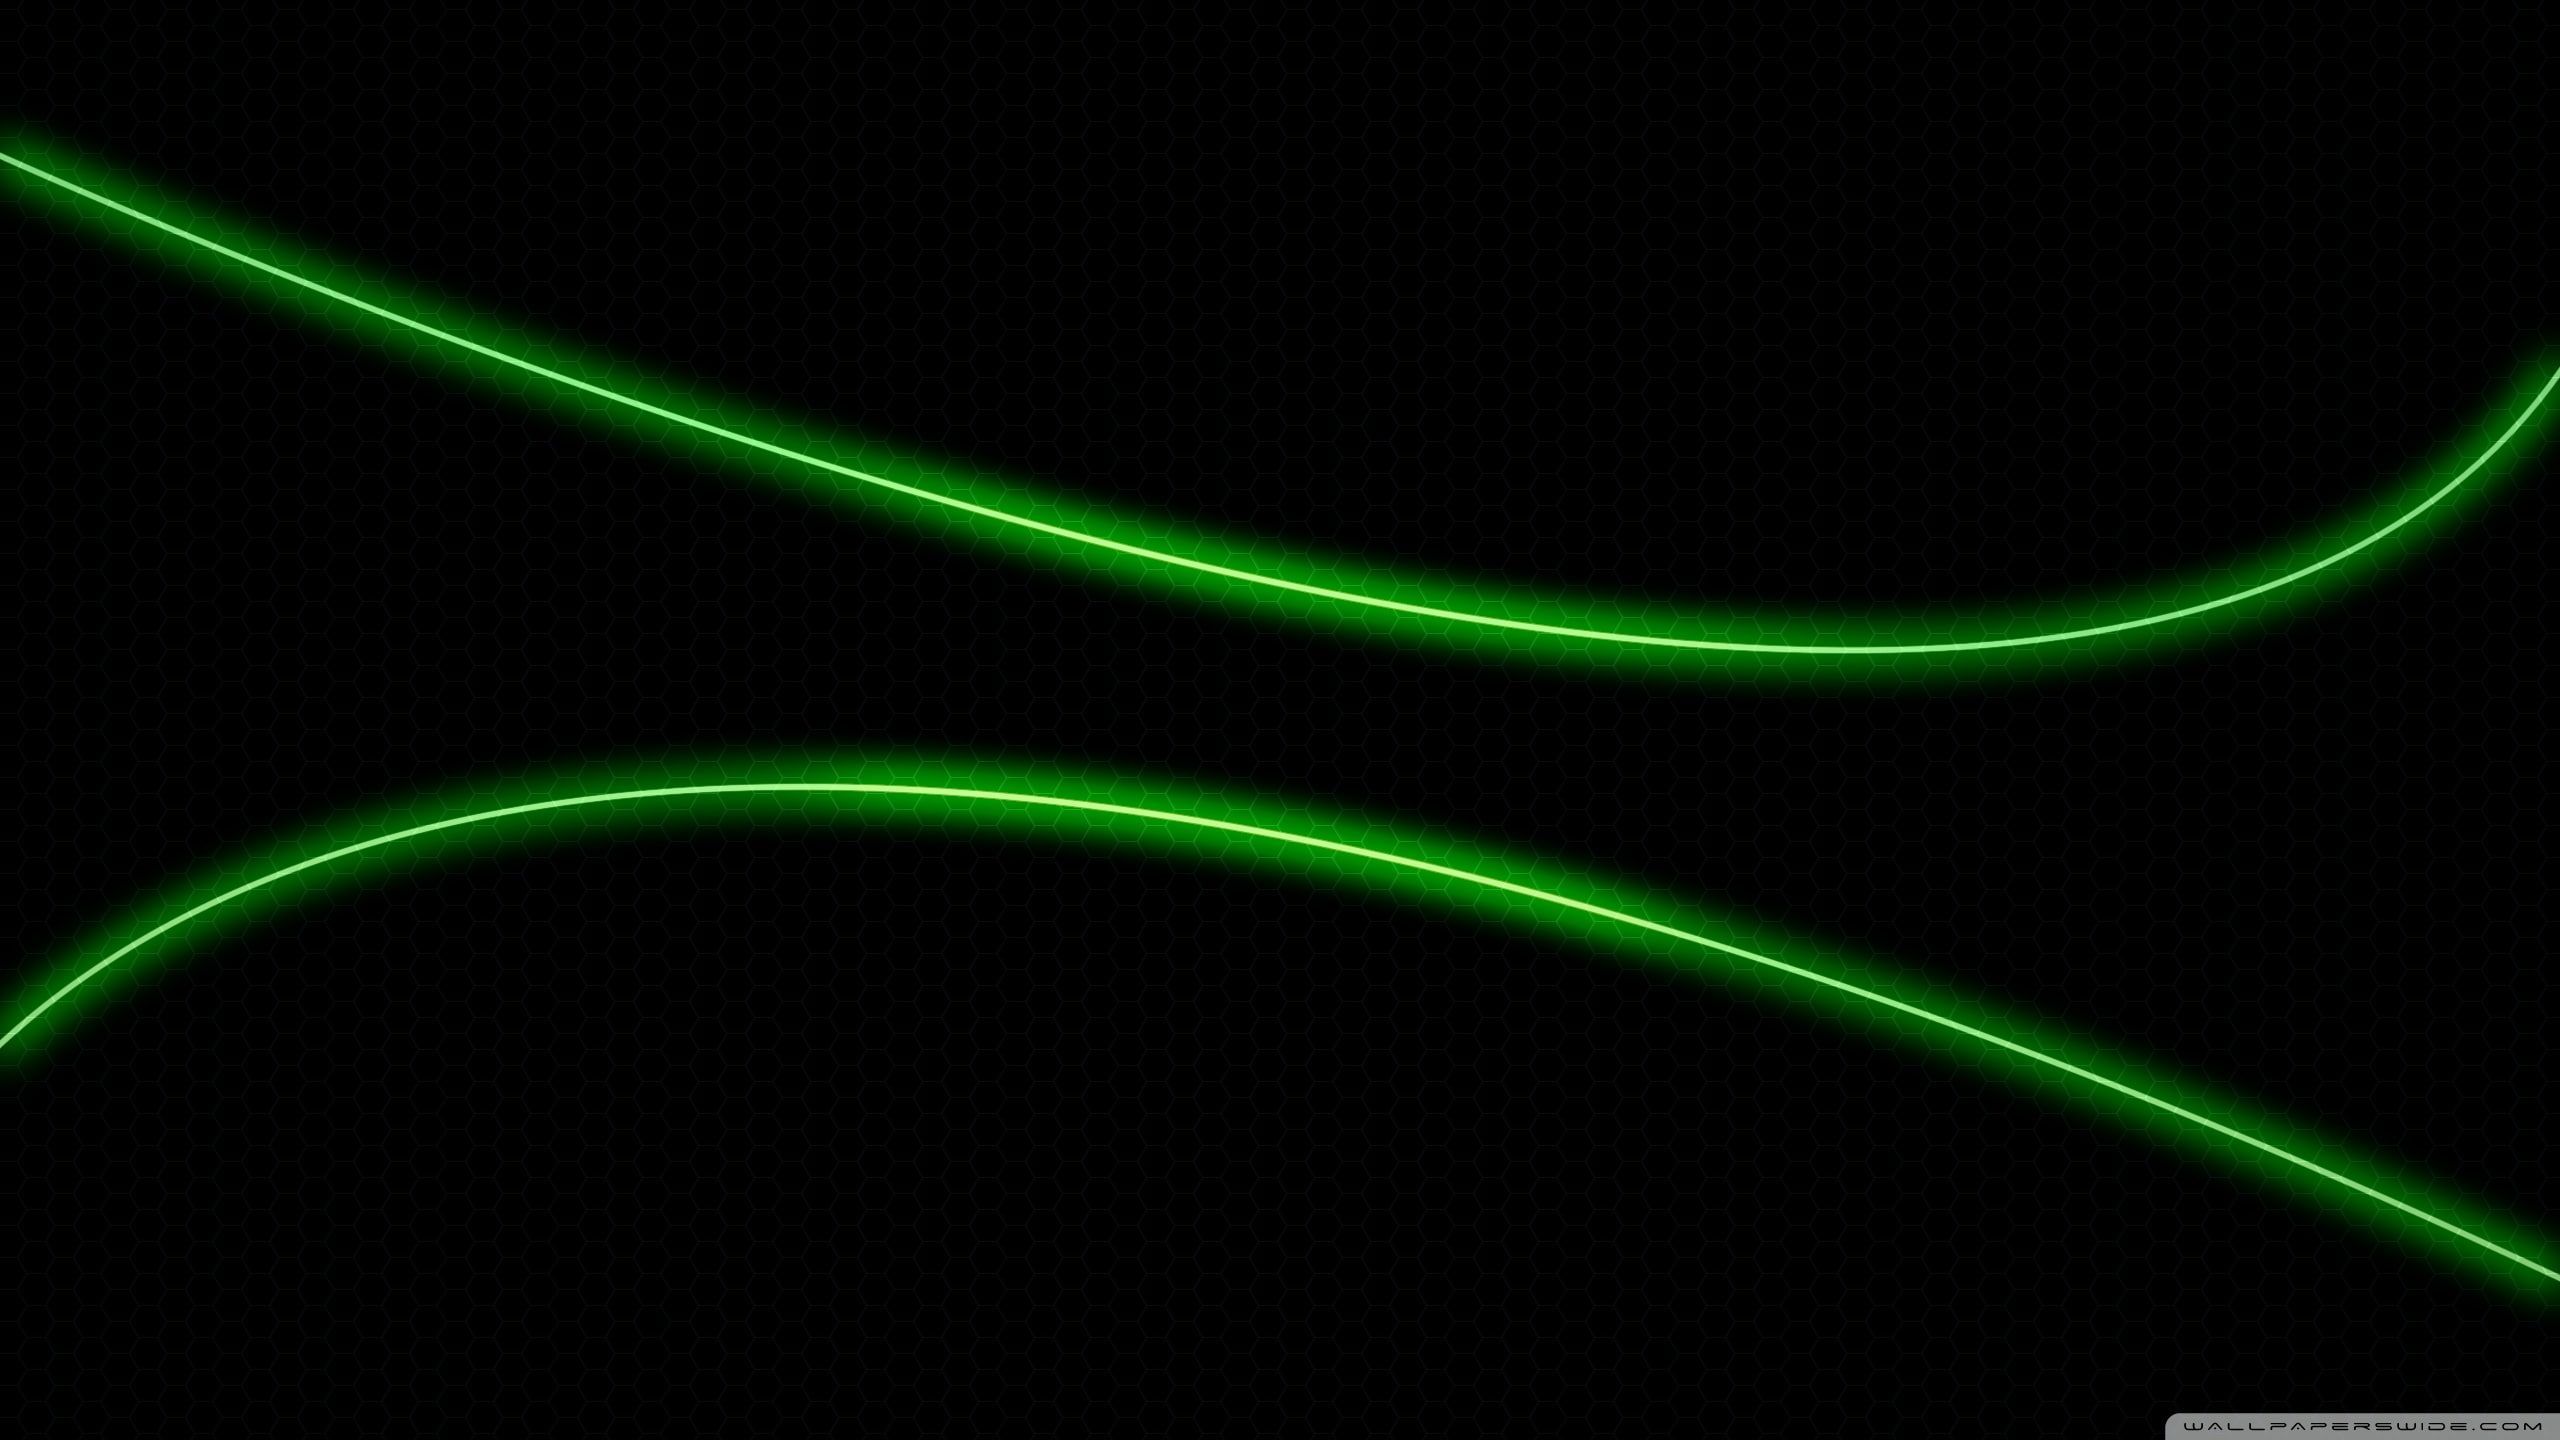 px #Green #light #neon K #wallpaper #hdwallpaper #desktop. Neon light wallpaper, Green wallpaper, Black background wallpaper